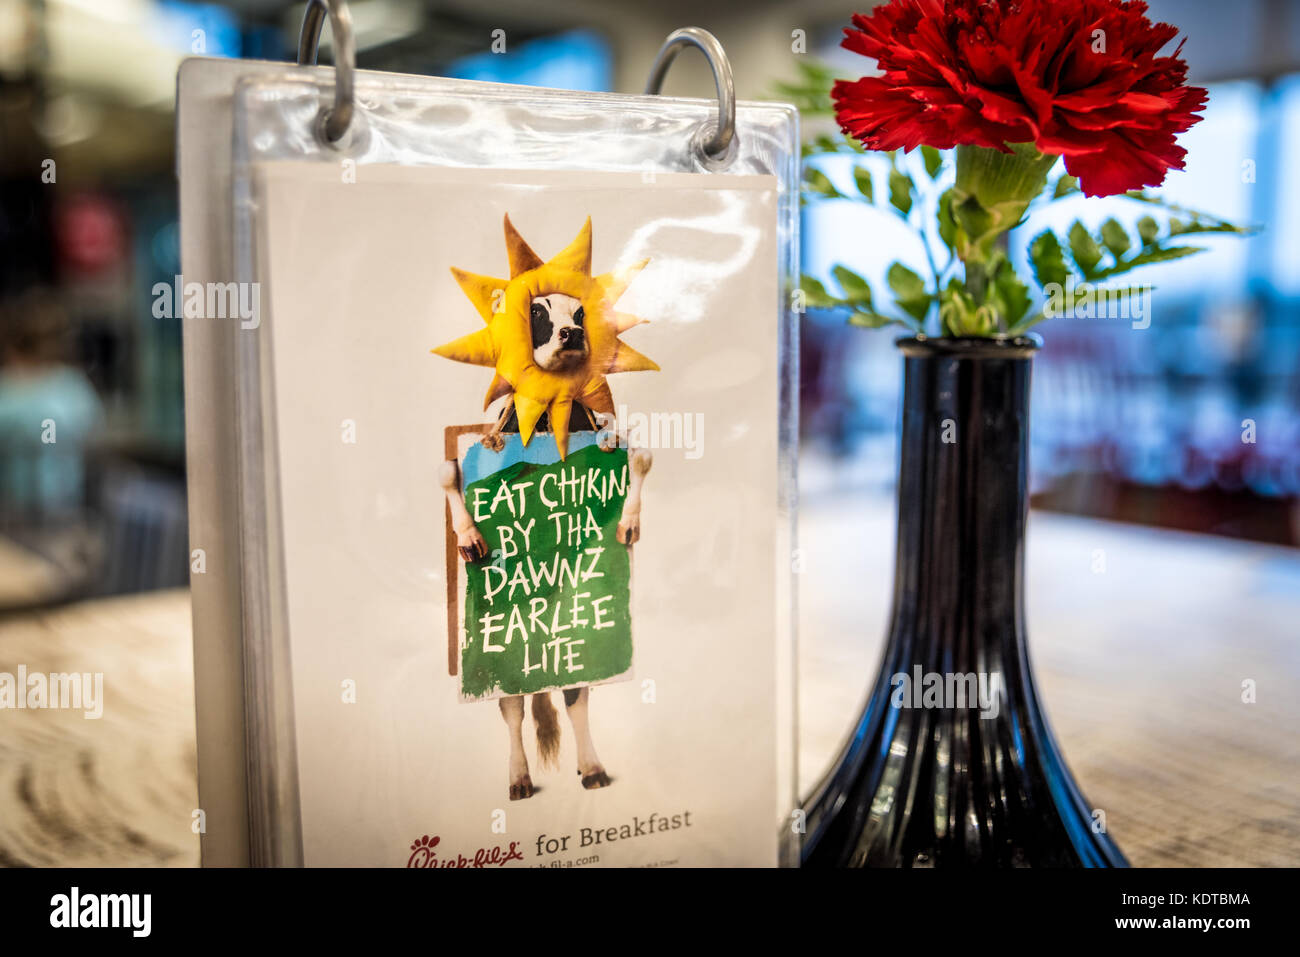 Chick-fil-a affichage d'une table avec des fleurs et d'un tableau de cartes présentant la chaîne de restaurants populaires de la campagne vache marketing. (Usa) Banque D'Images